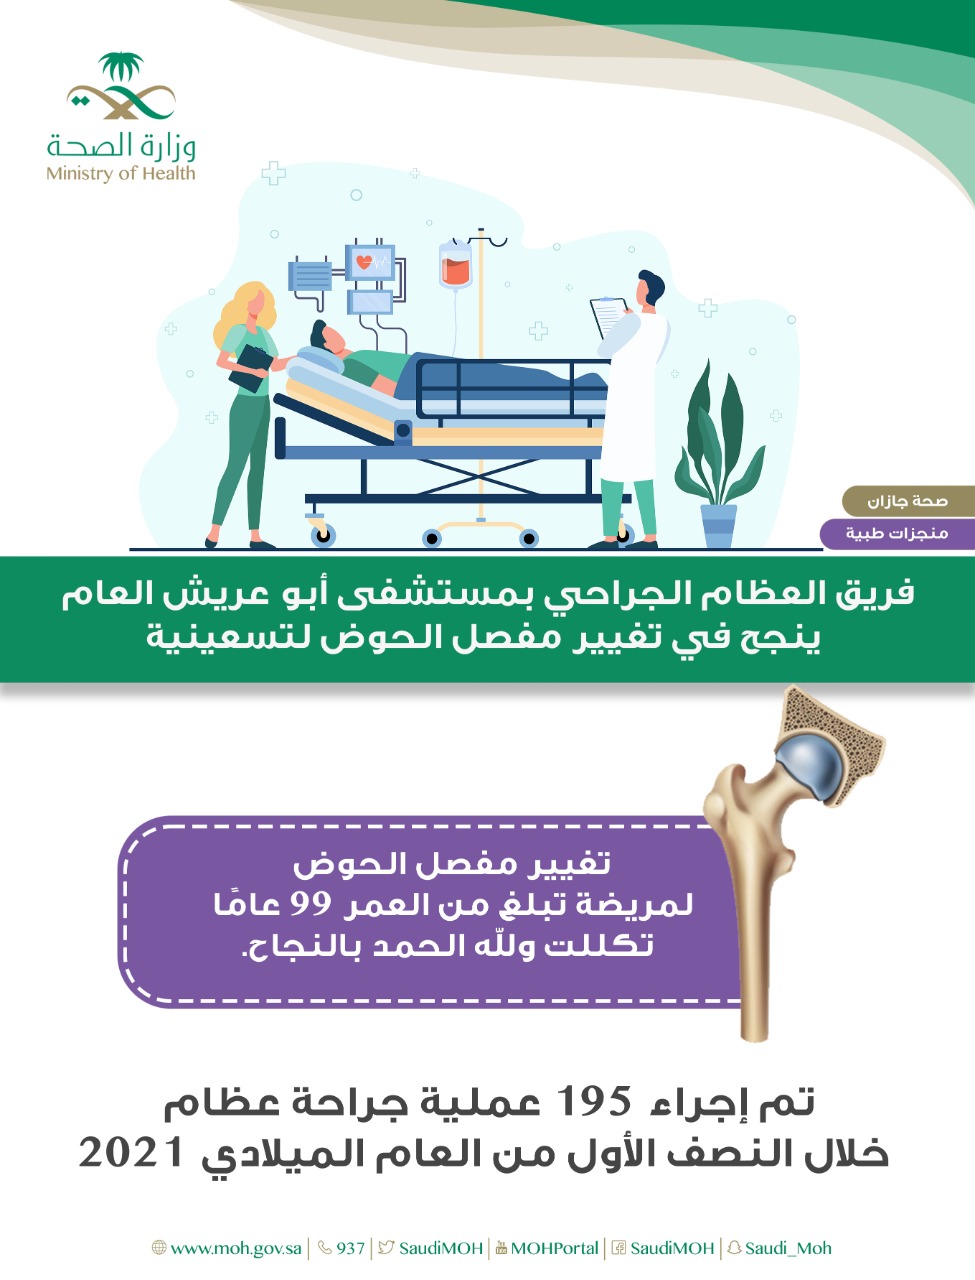 فريق العظام الجراحي بمستشفى أبو عريش العام ينجح في تغيير مفصل الحوض لتسعينية